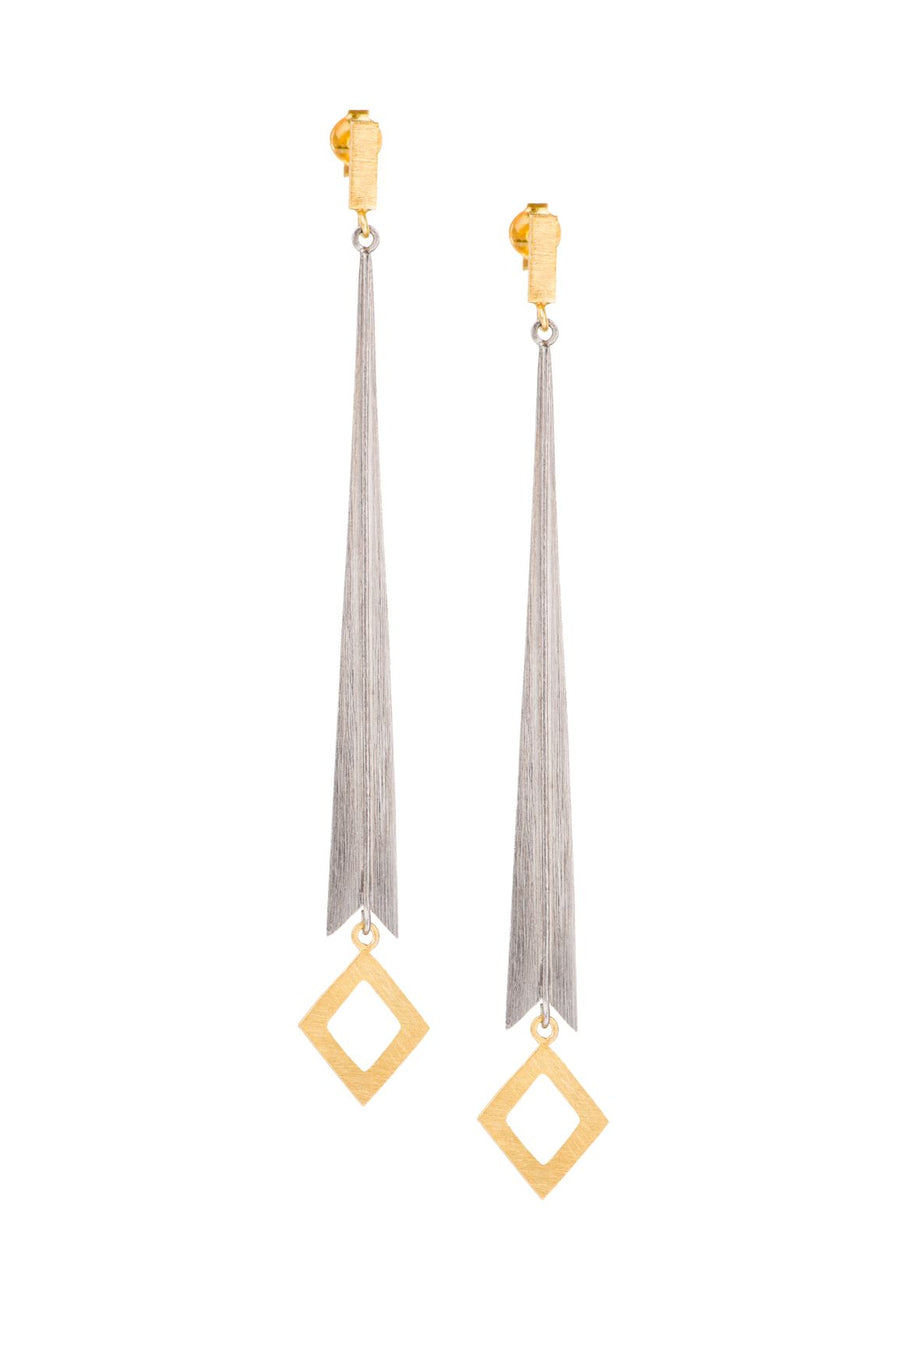 Silver & Gold Warrior Statuesque Earrings Earring Rosie Odette Jewellery